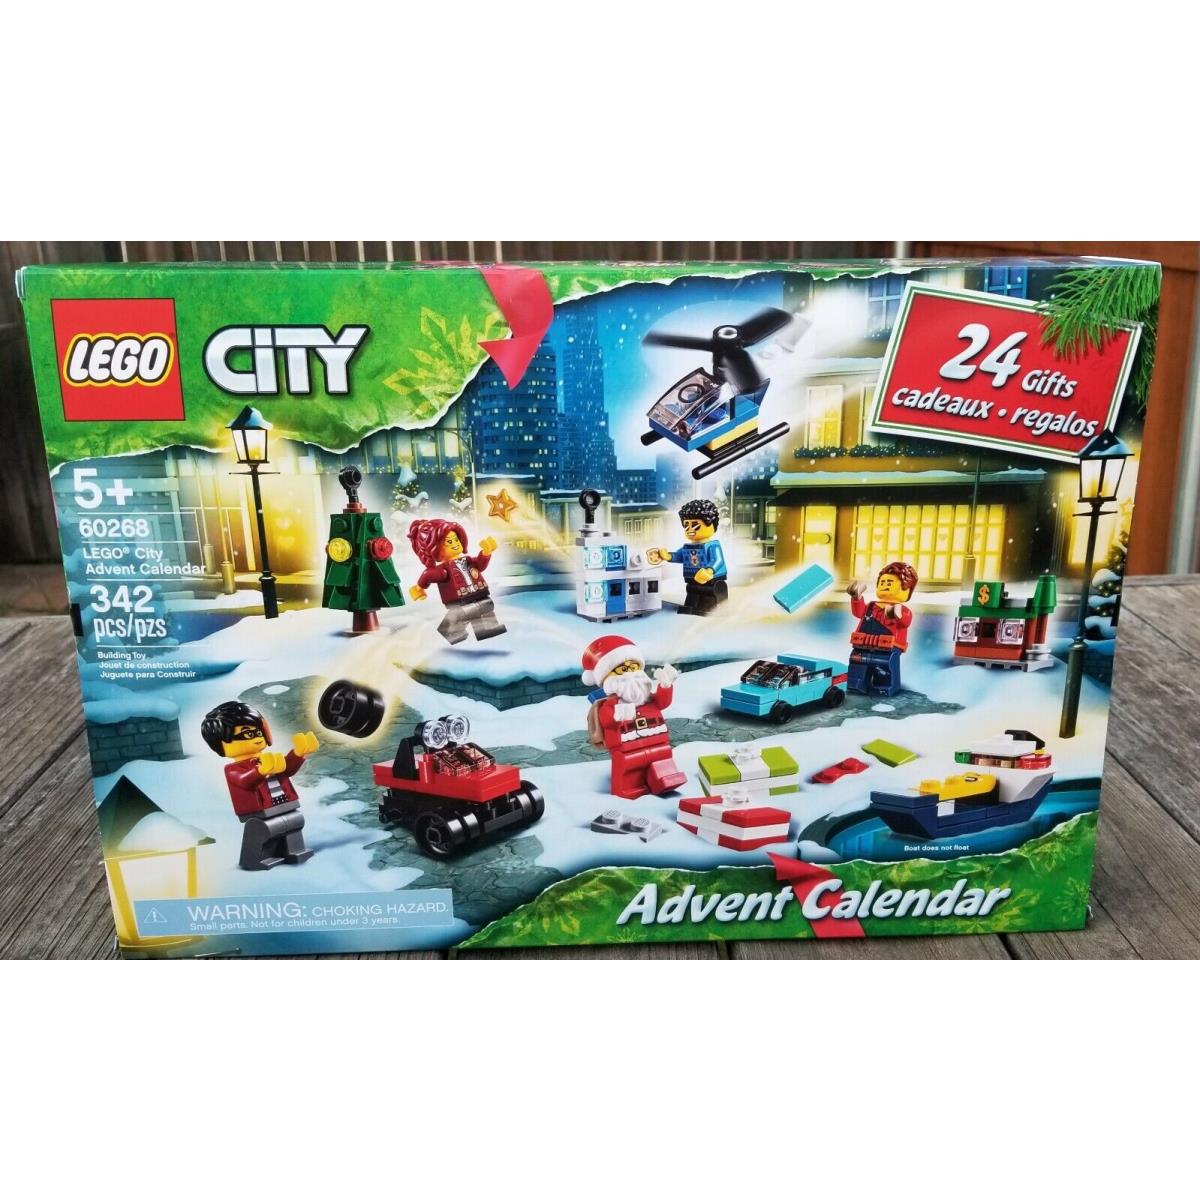 Lego City 60268 Advent Calendar Building Set - 342 Pieces